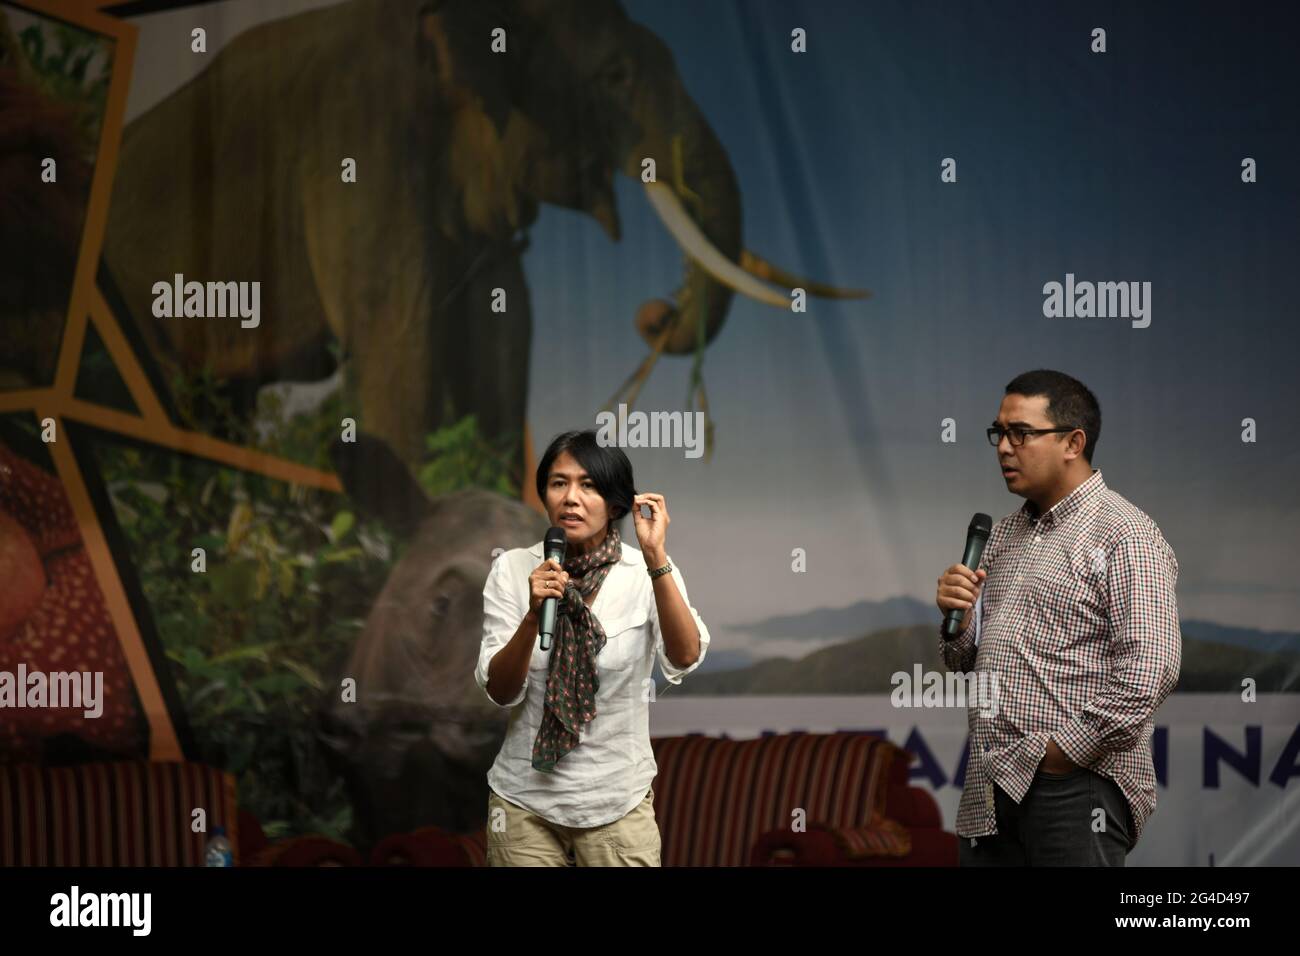 La trasmissione indonesiana di notizie presentatore Desi Anwar e Muhammad Farhan che ha un talk show sul parco nazionale e la conservazione della natura sul palco, durante un evento tenuto dal Ministero delle foreste indonesiano nel Parco Nazionale Kambas di Way, Lampung, Indonesia. Foto Stock